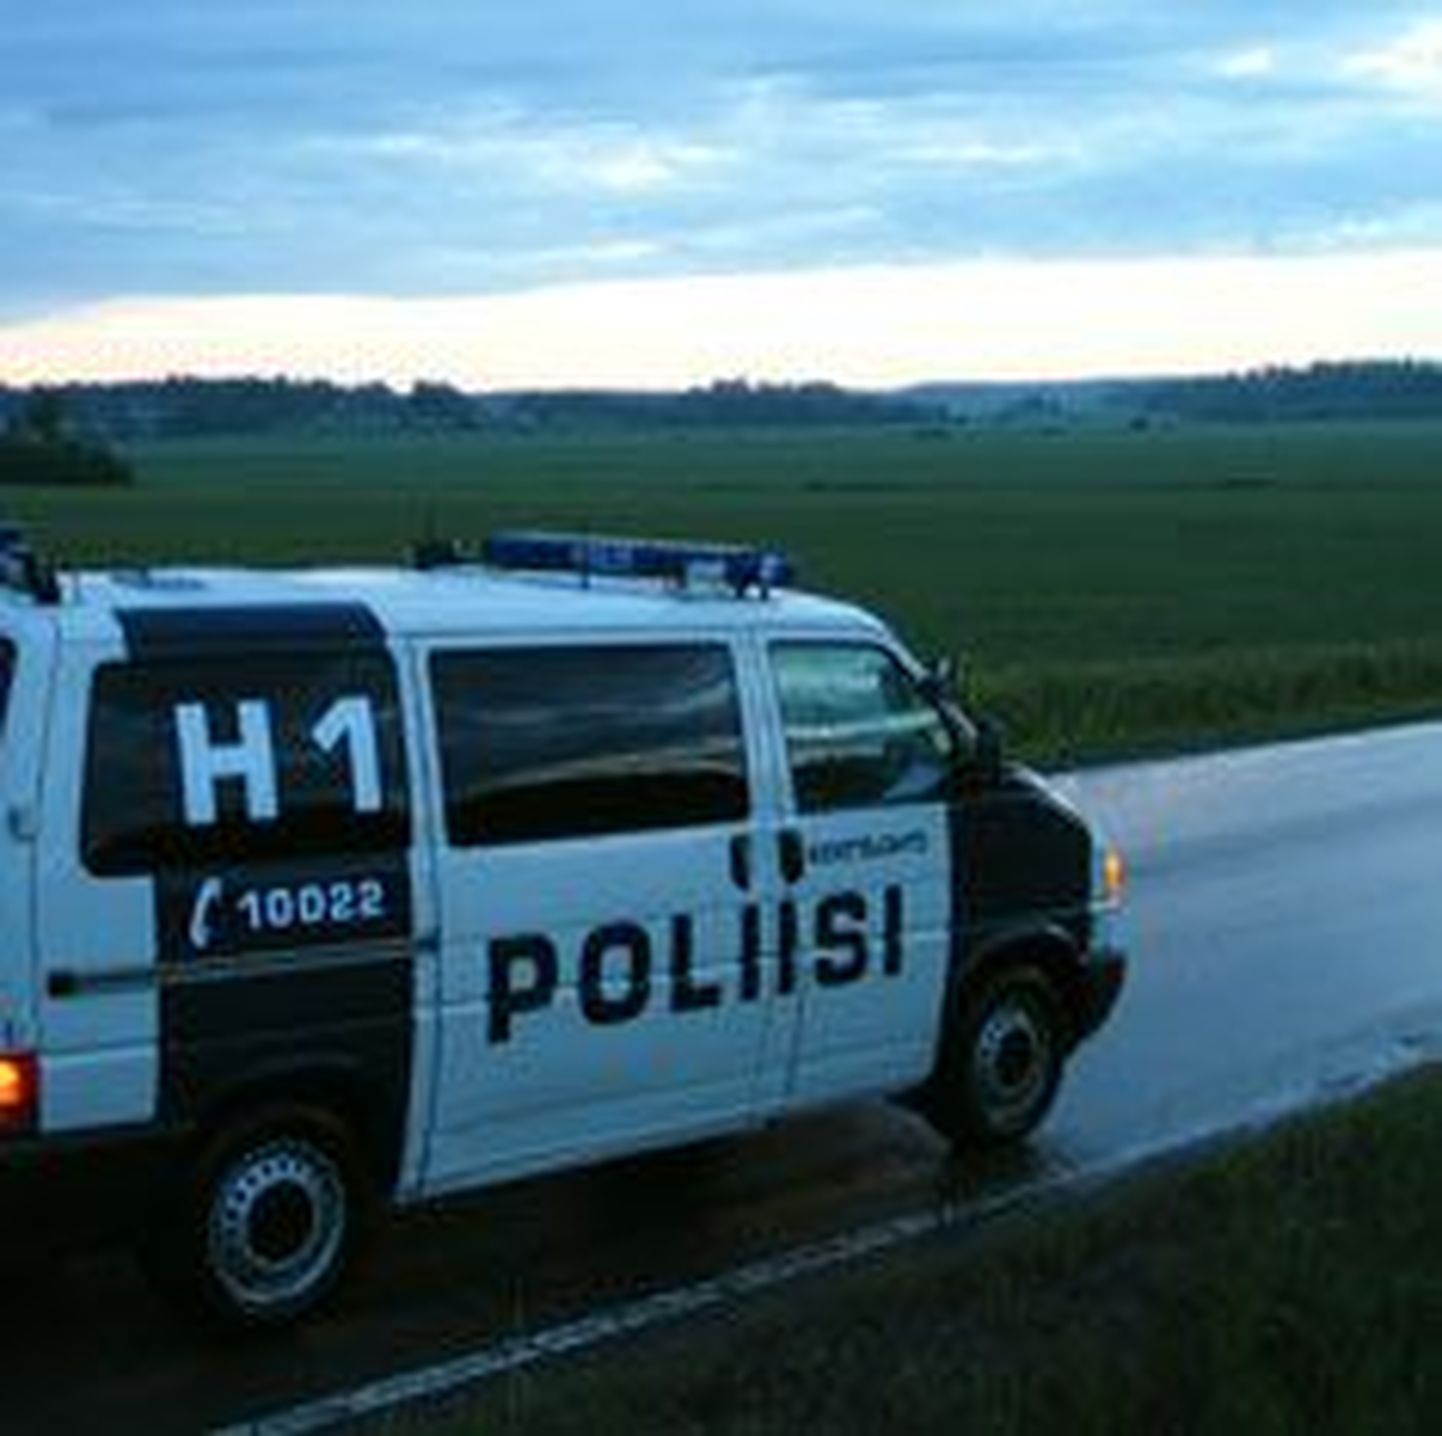 Soome politseiauto